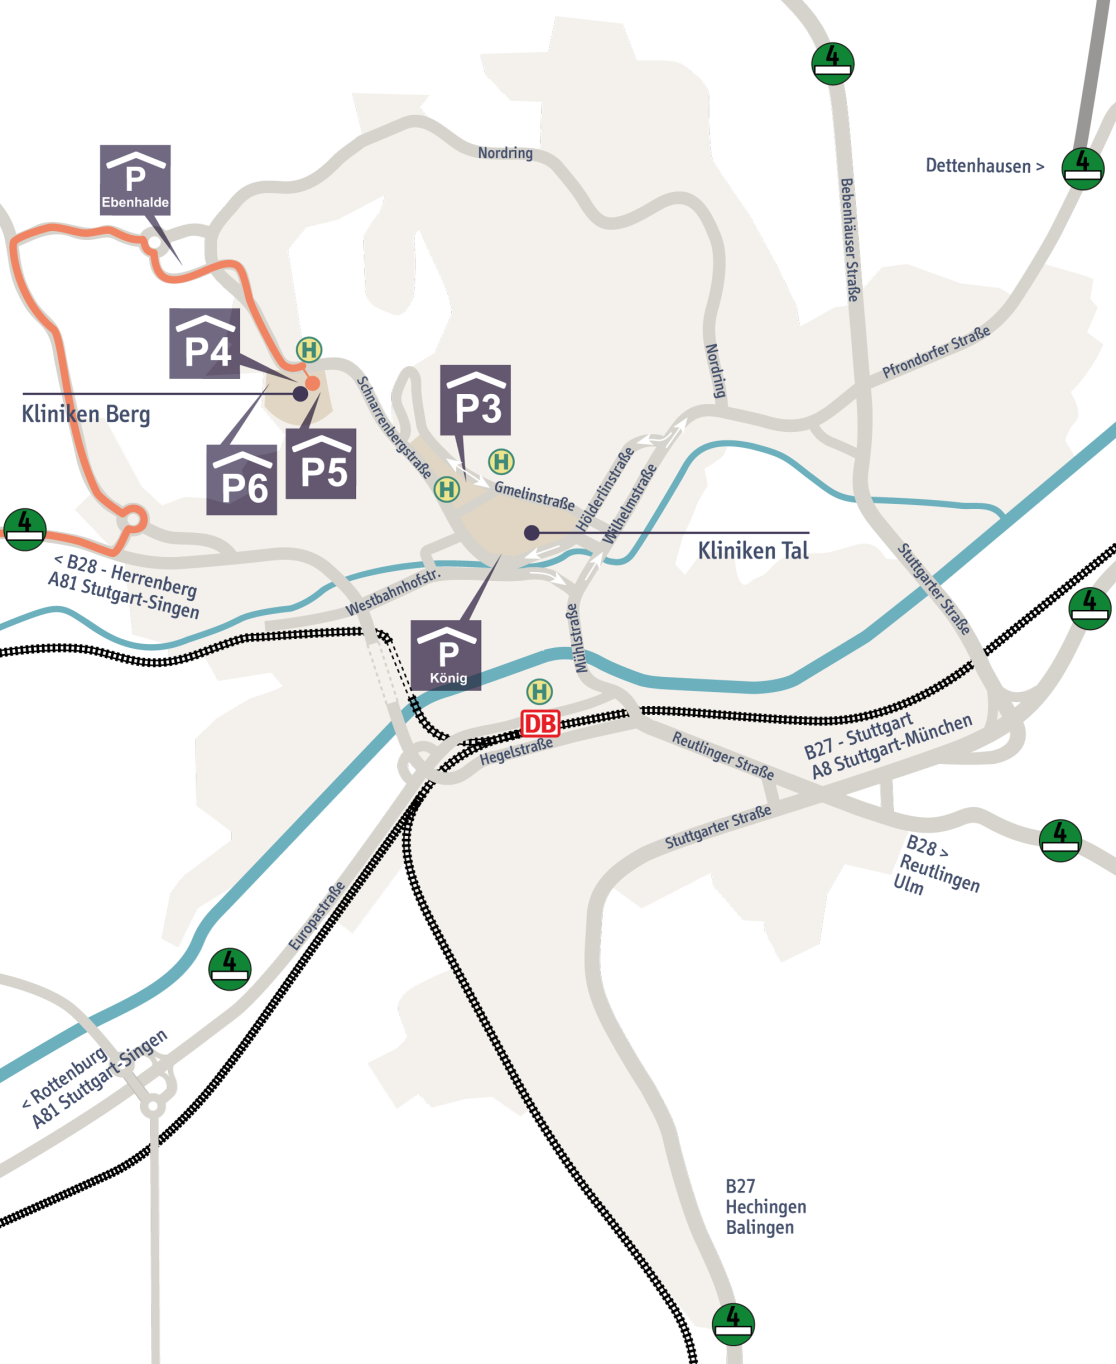 Stadtplan mit Anfahrtsroute über die A 81 Ausfahrt Herrenberg